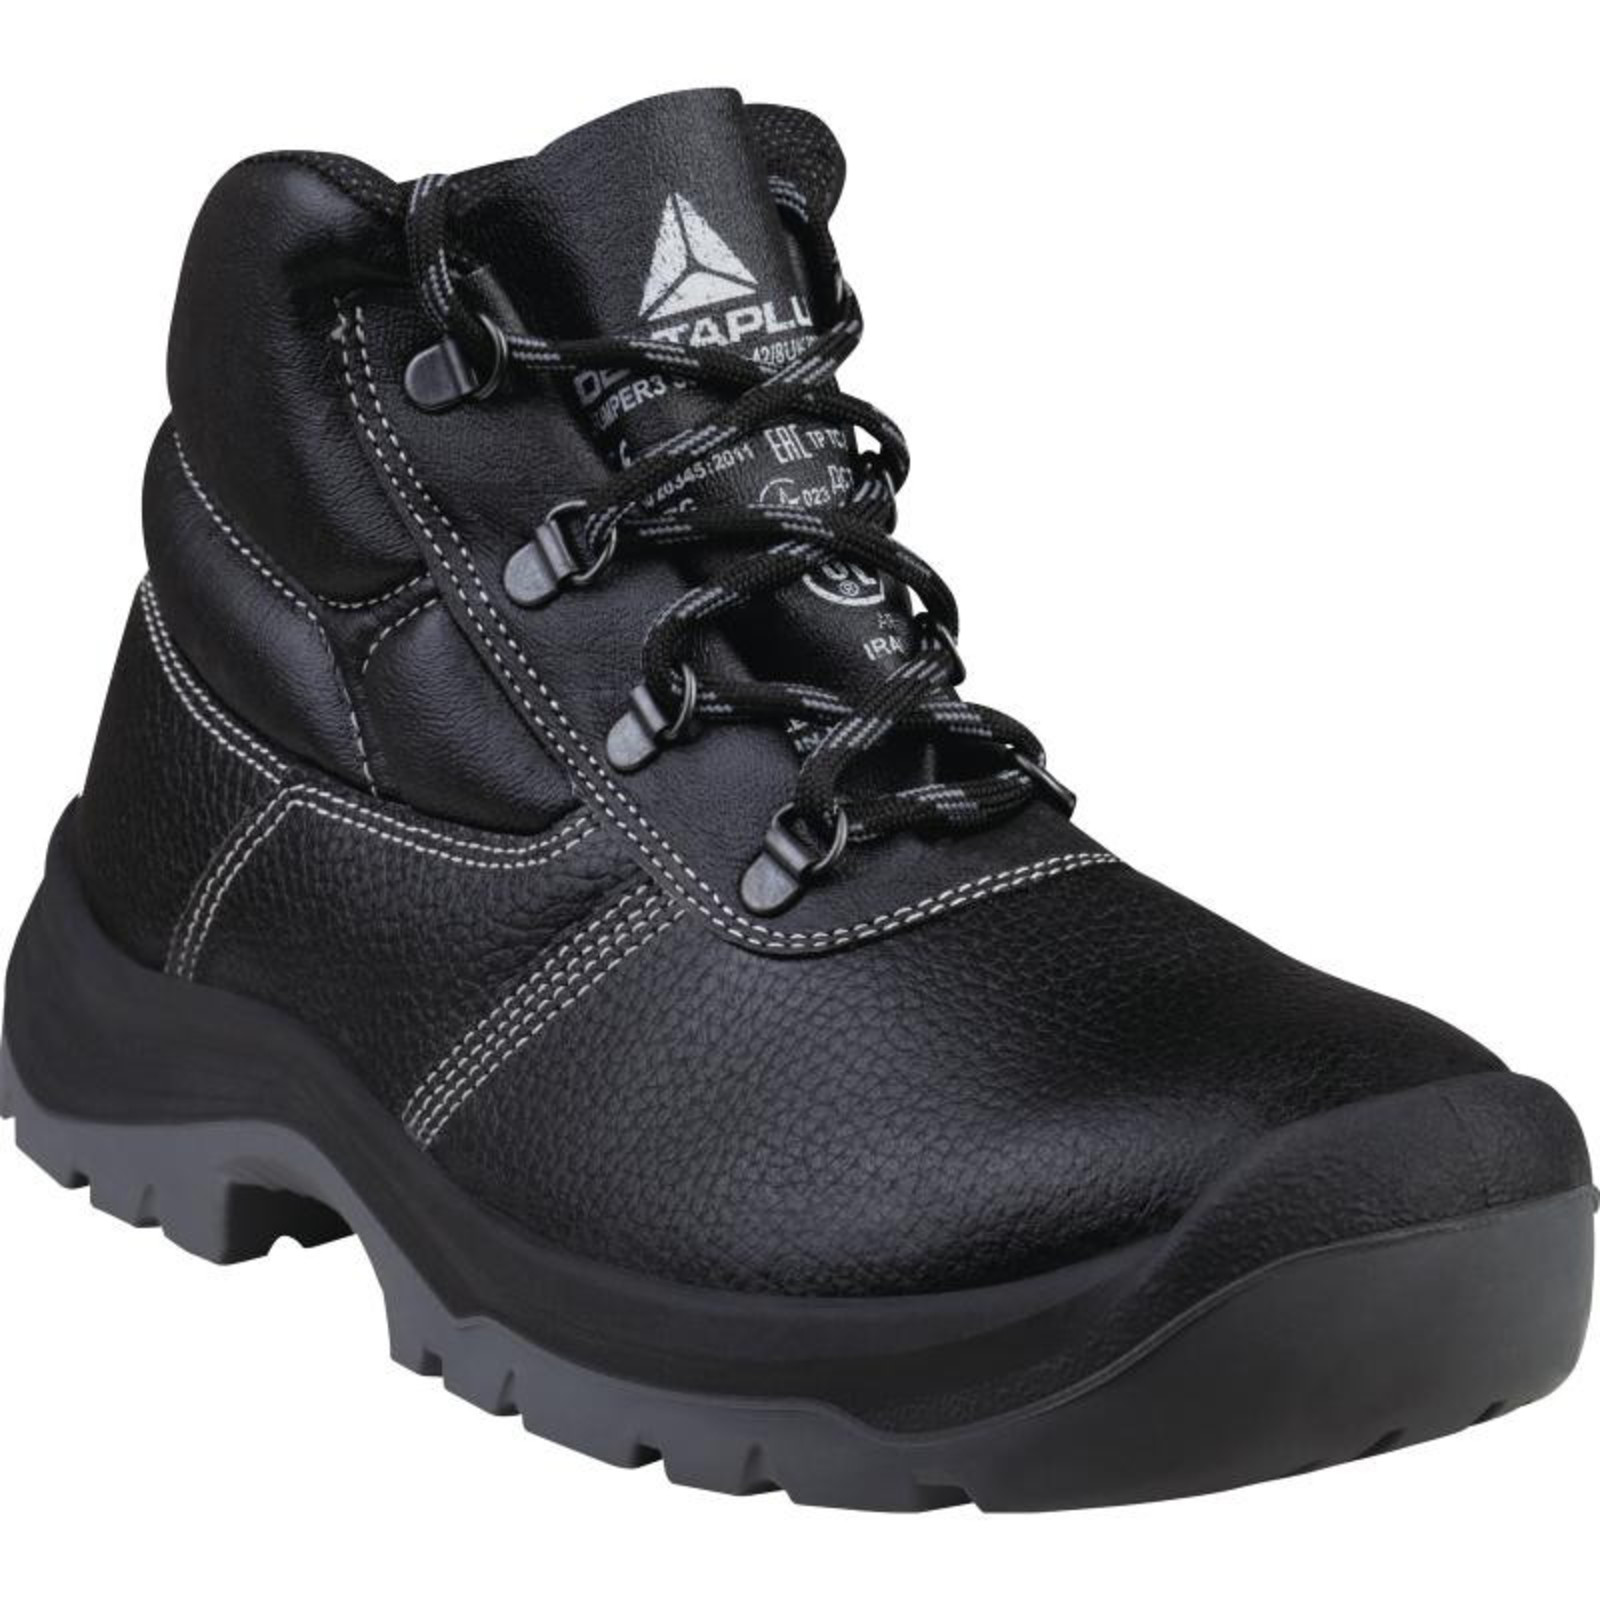 Členková bezpečnostná obuv Delta Plus Jumper3 S3 SRC - veľkosť: 39, farba: čierna